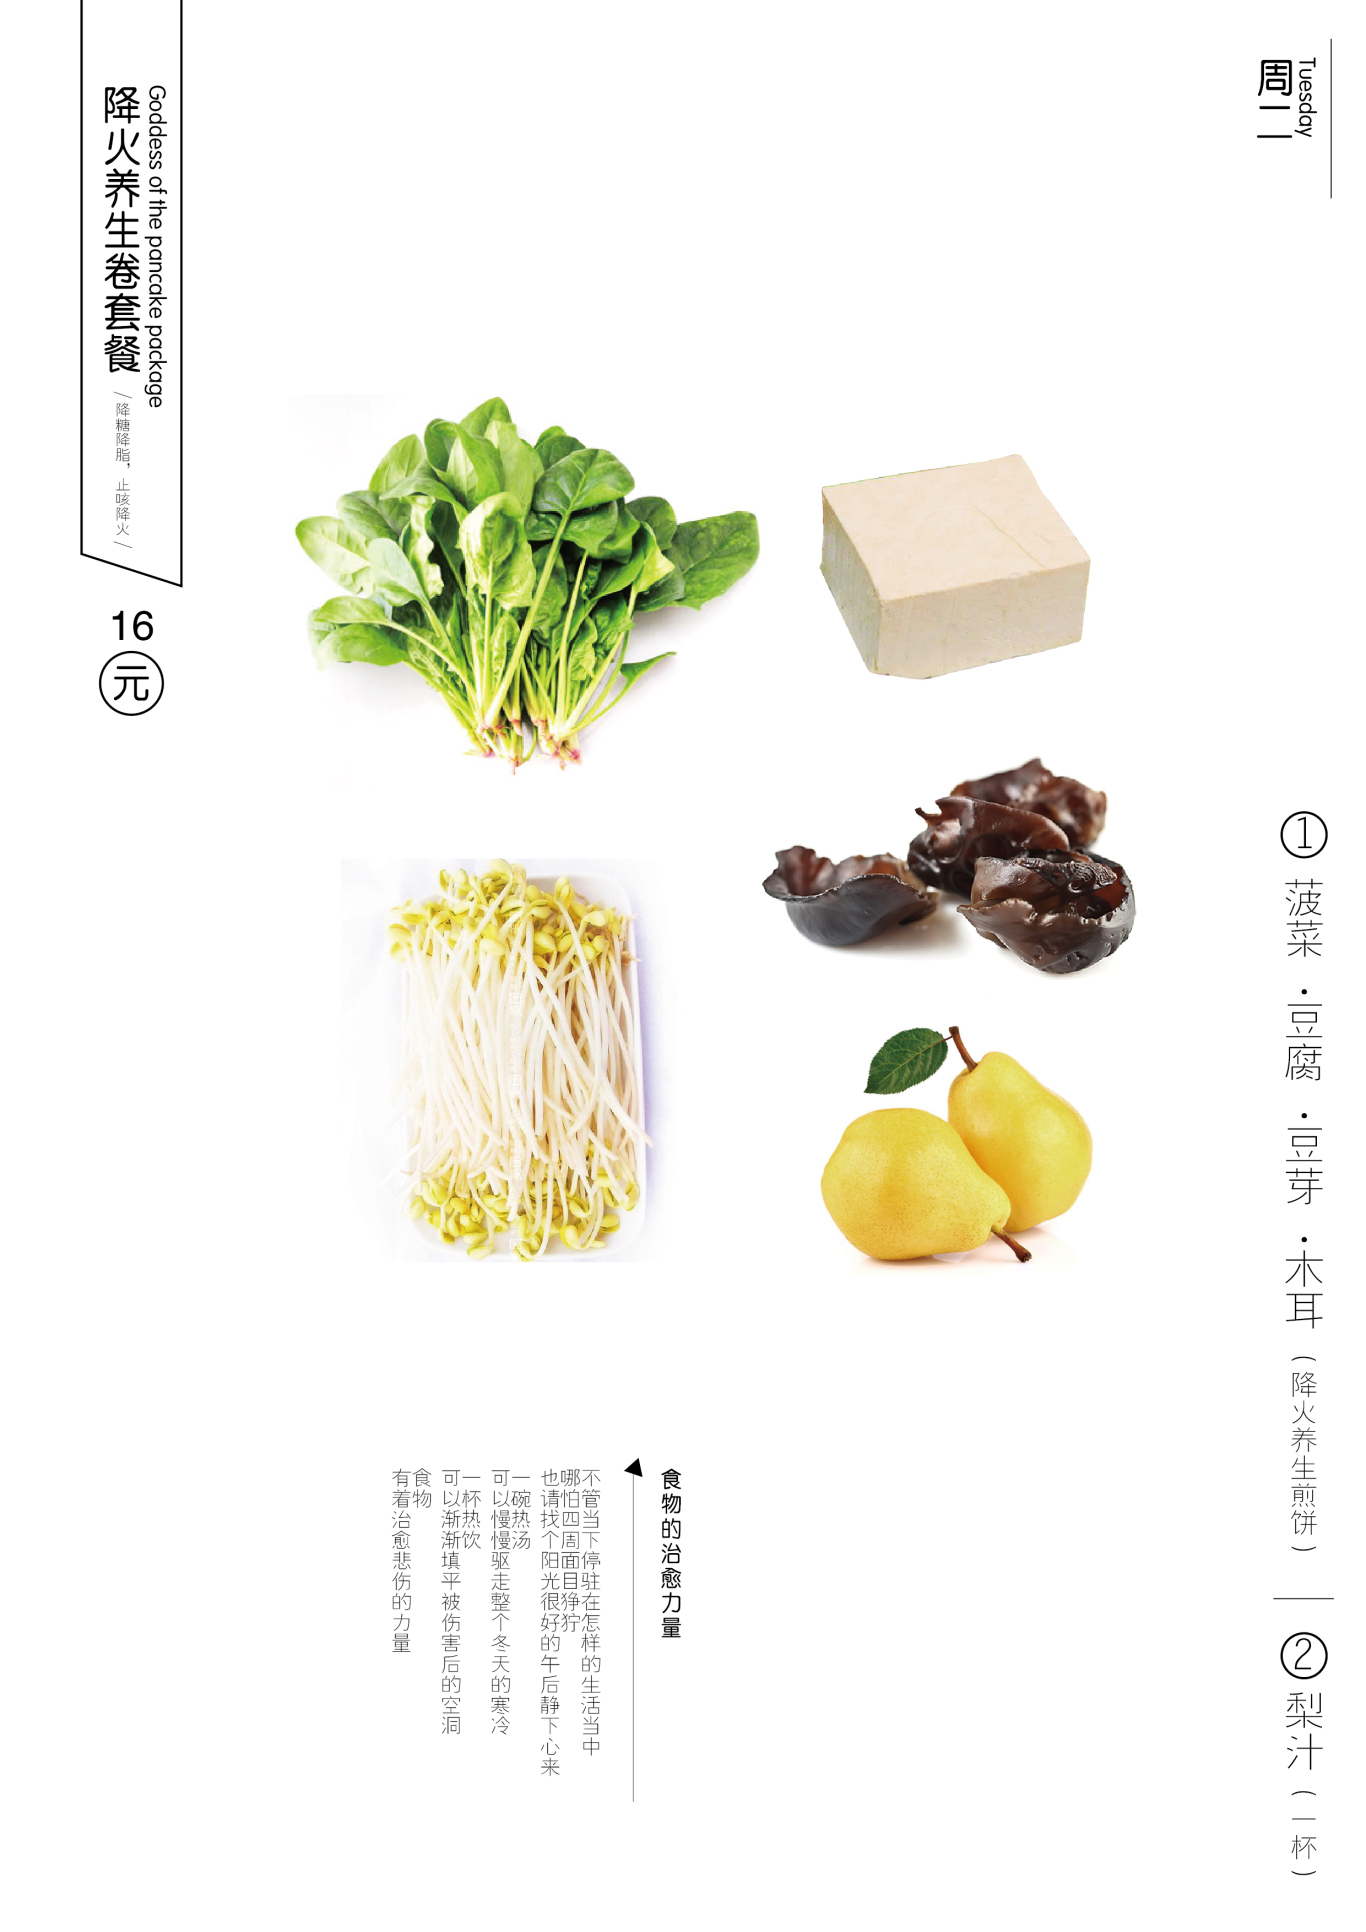 菜菜卷包装菜单设计图11